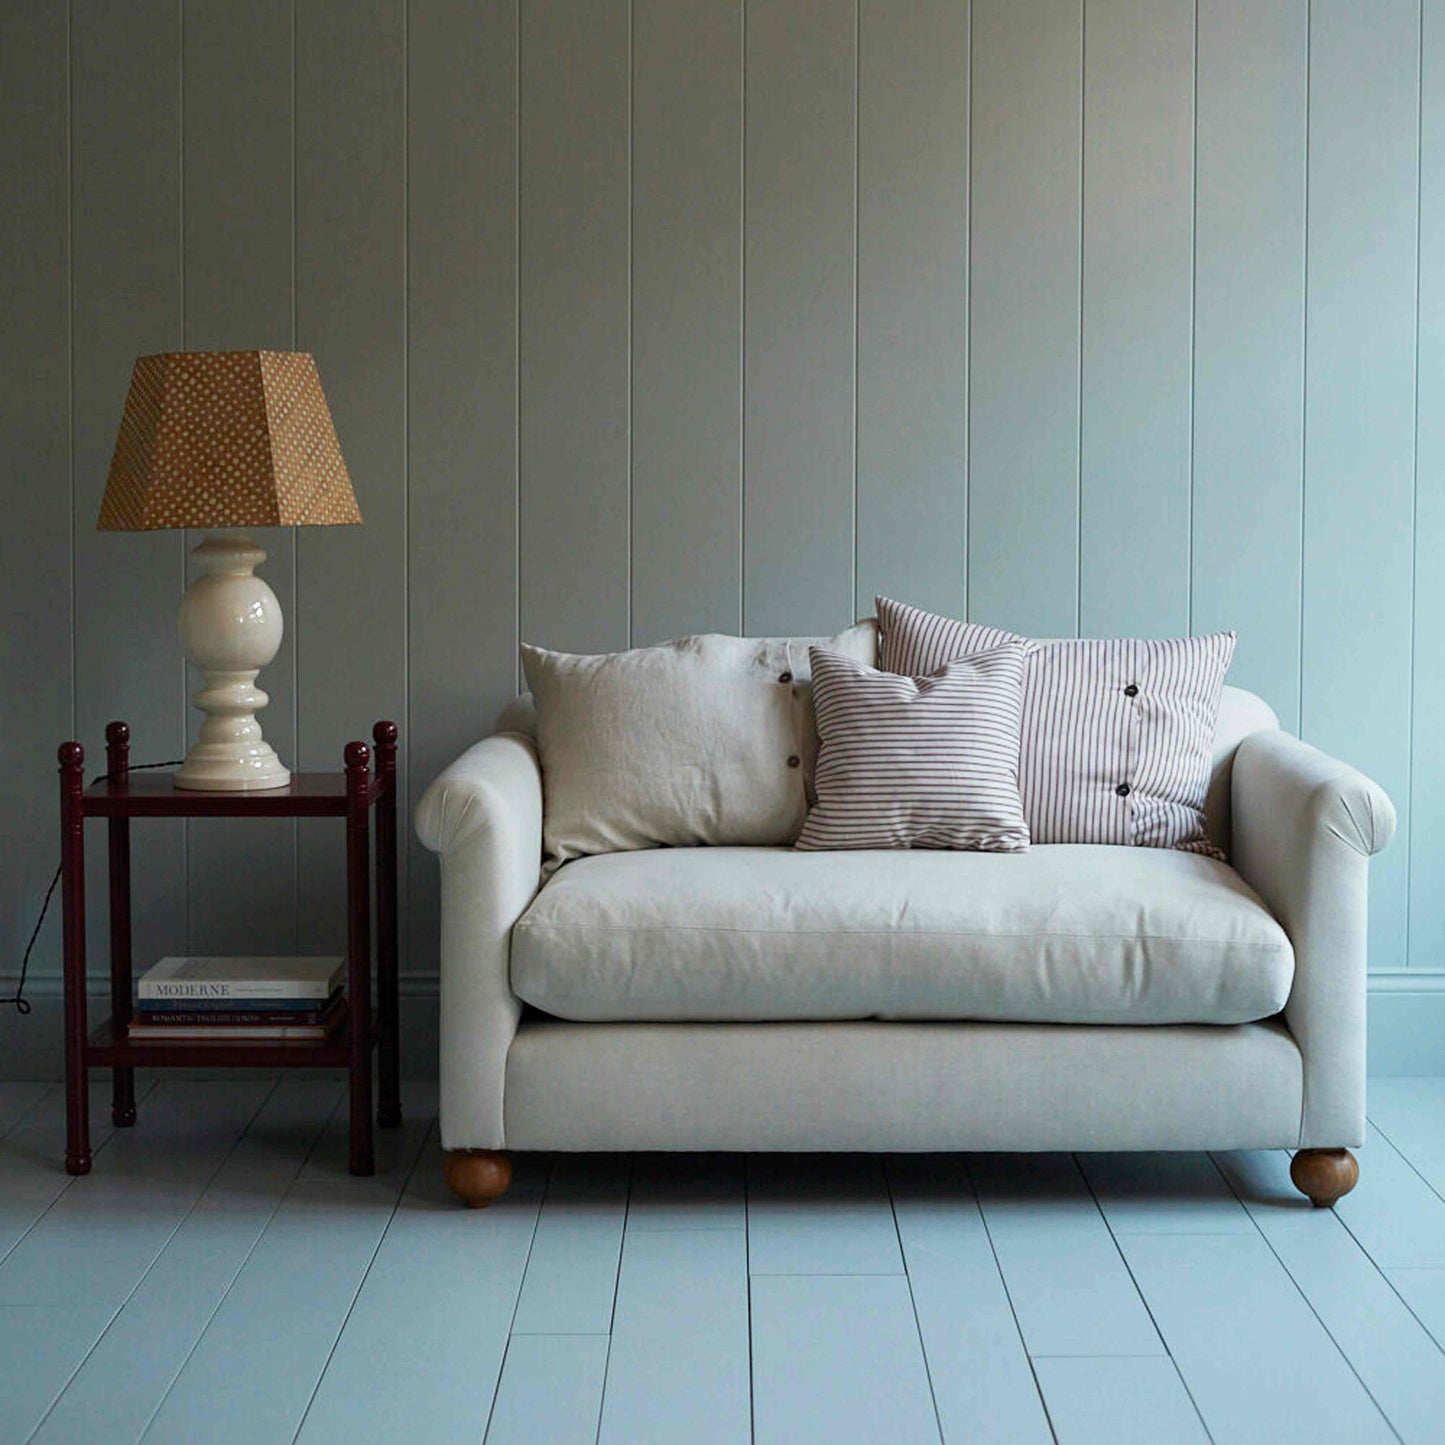 Dolittle 2 Seater Sofa in Intelligent Velvet Dusky Pink